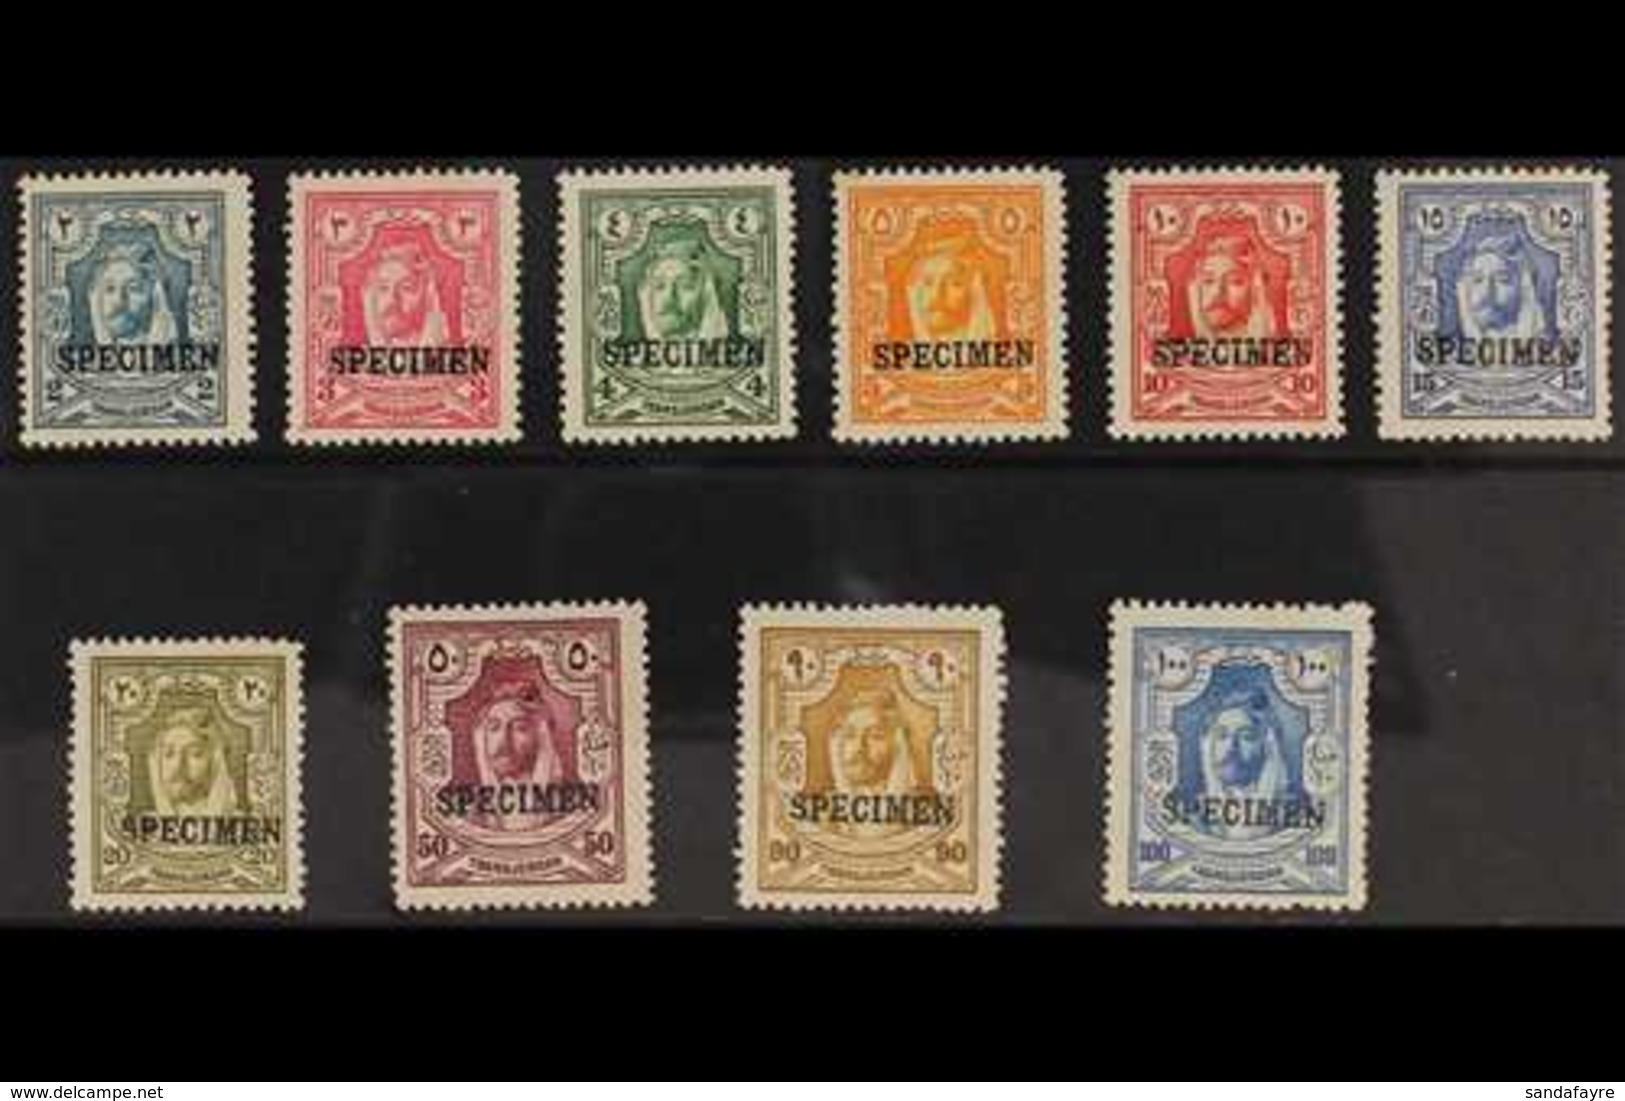 1927  Definitives Set To 100m Overprinted "SPECIMEN", SG 159s/68s, Very Fine Mint. (10 Stamps) For More Images, Please V - Jordan